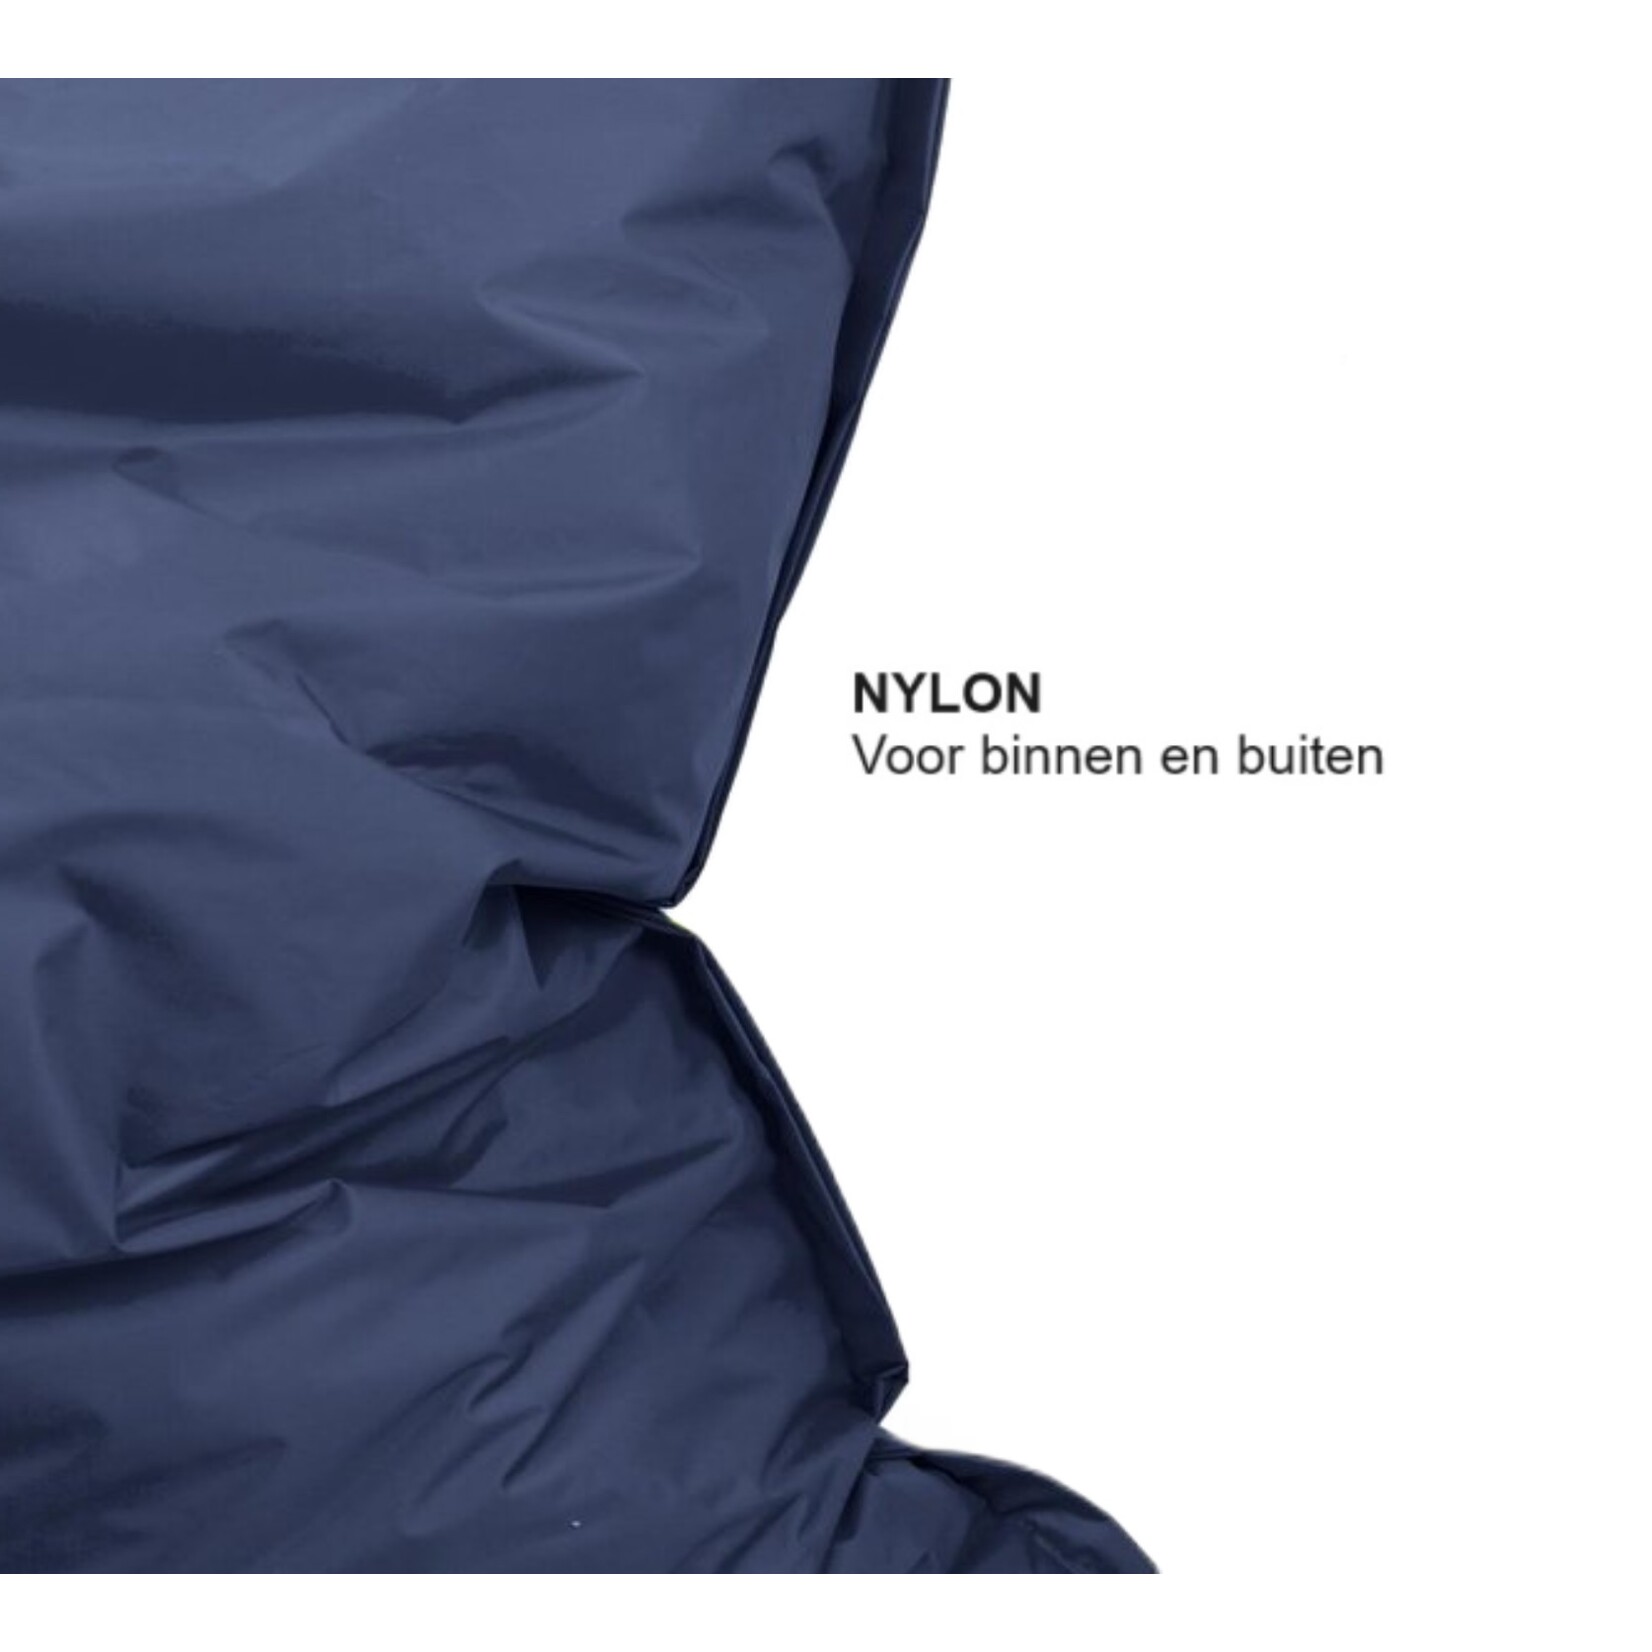 Drop & Sit zitzak - Nylon - Zitzakfauteuil - Woonkamerzitzak - Marine blauw - 130 x 150 cm - binnen en buiten